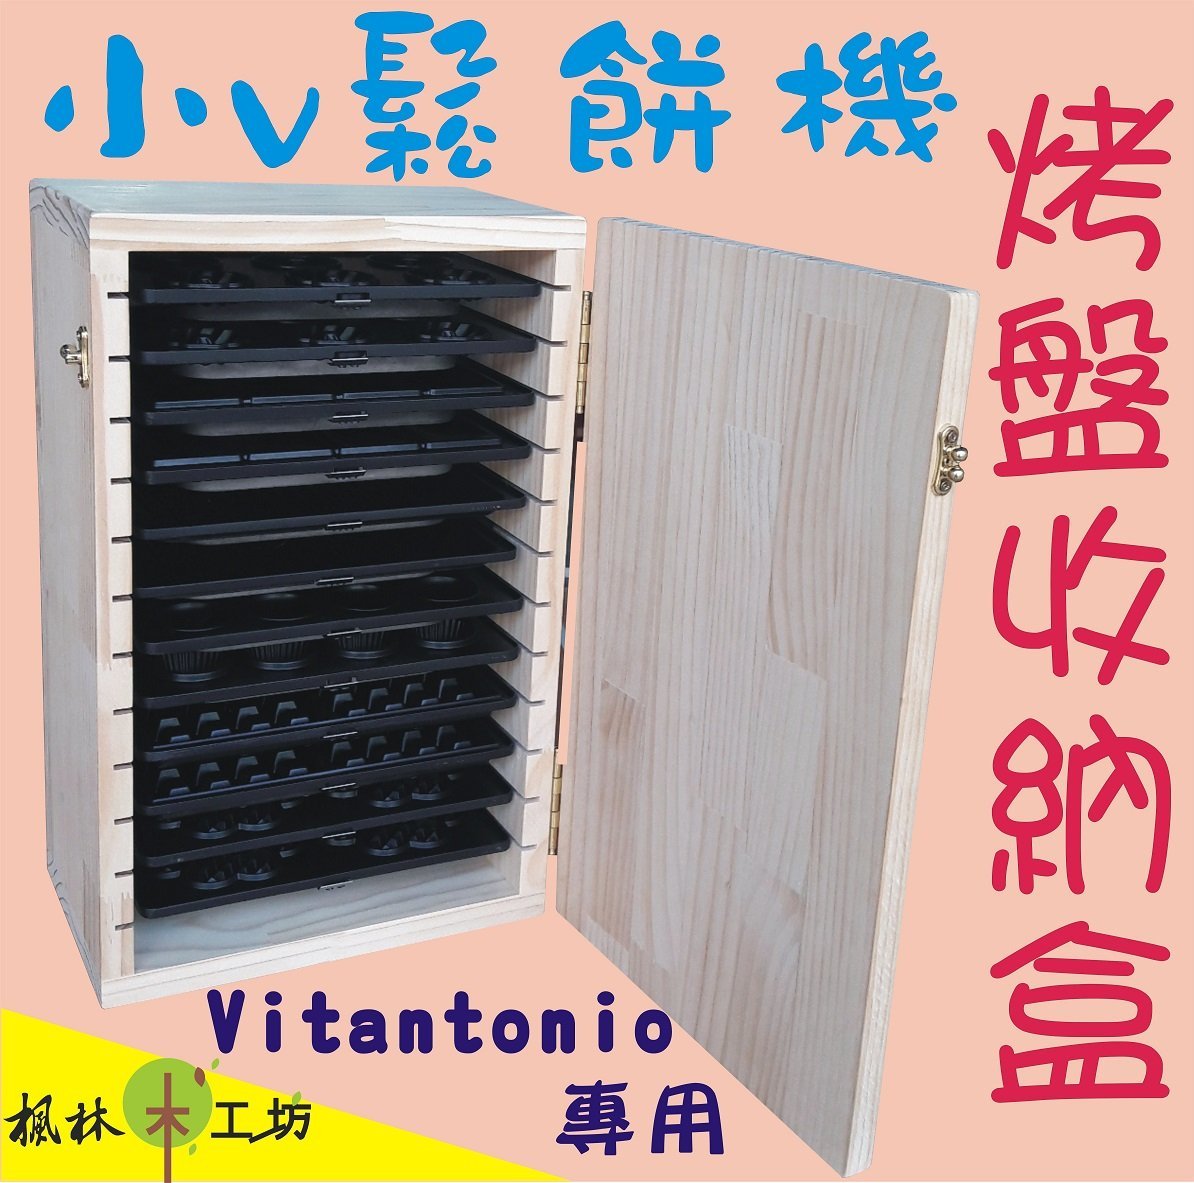 小v烤盤收納盒 Vitantonio烤盤收納盒Vitantonio鬆餅機烤盤收納櫃小v鬆餅機收納櫃小v收納盒12片